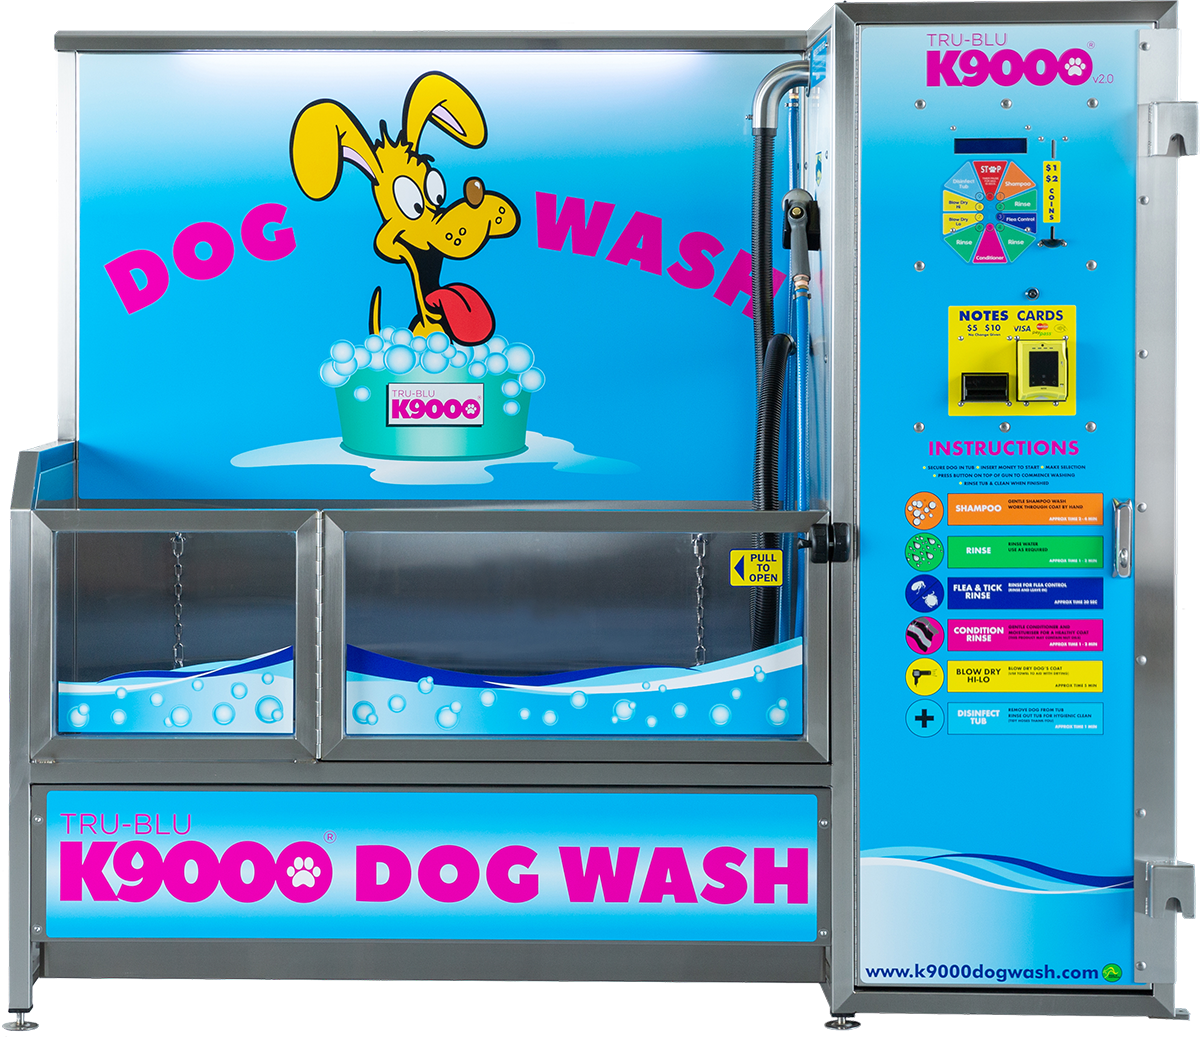 K9000 V2.0 dog wash machine